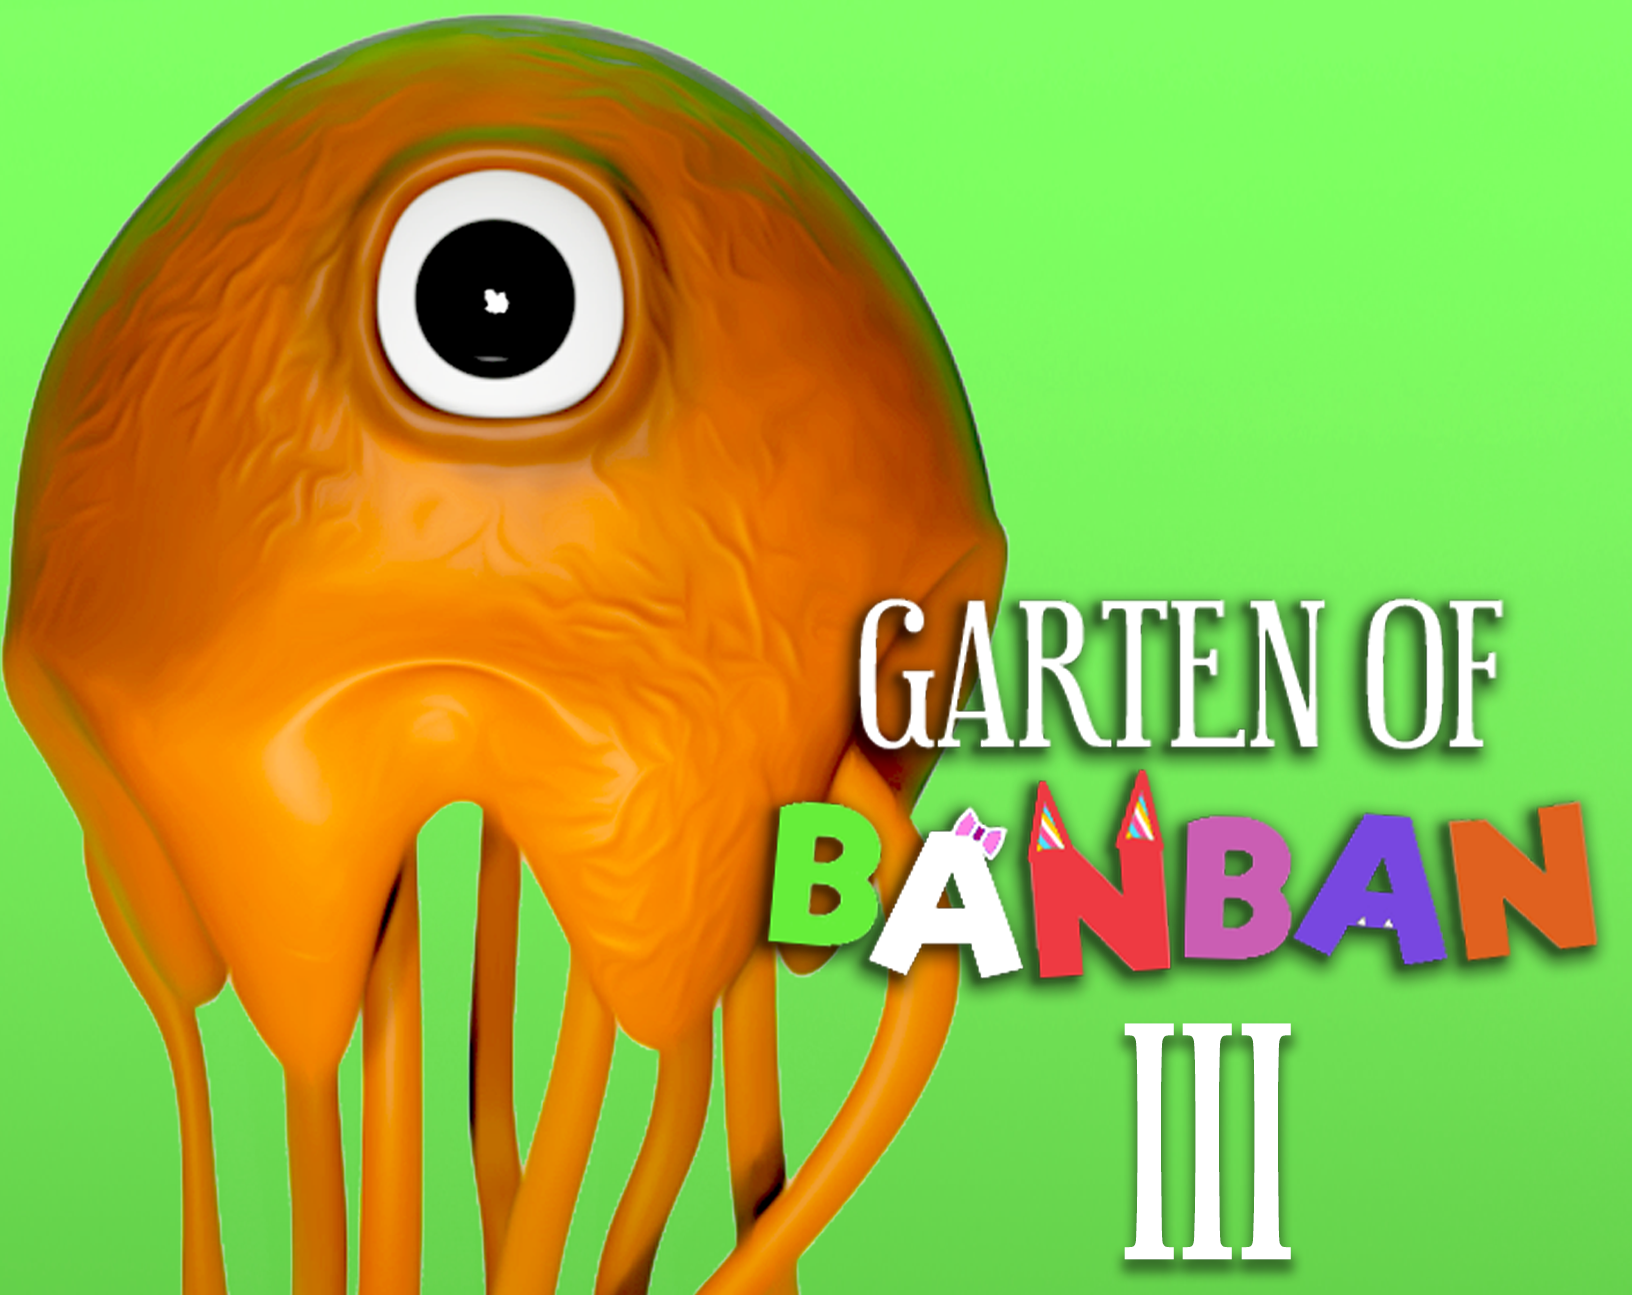 Garten of Banban 3 by Euphoric Brothers